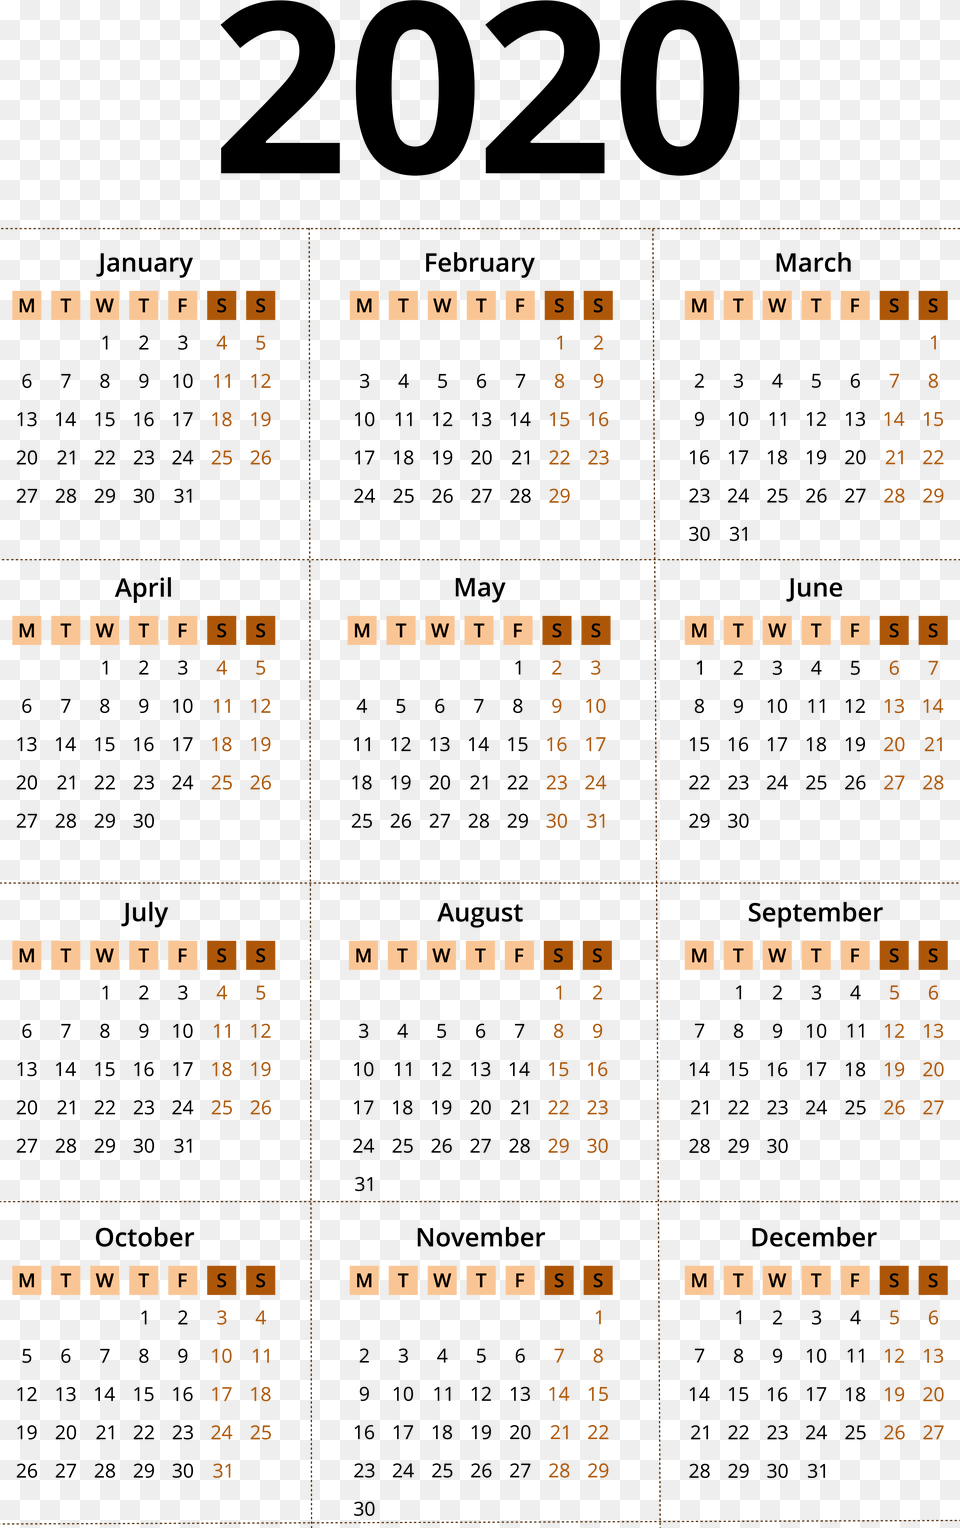 2020 Calendar Chinese Lunar Calendar 2020, Scoreboard, Text Png Image